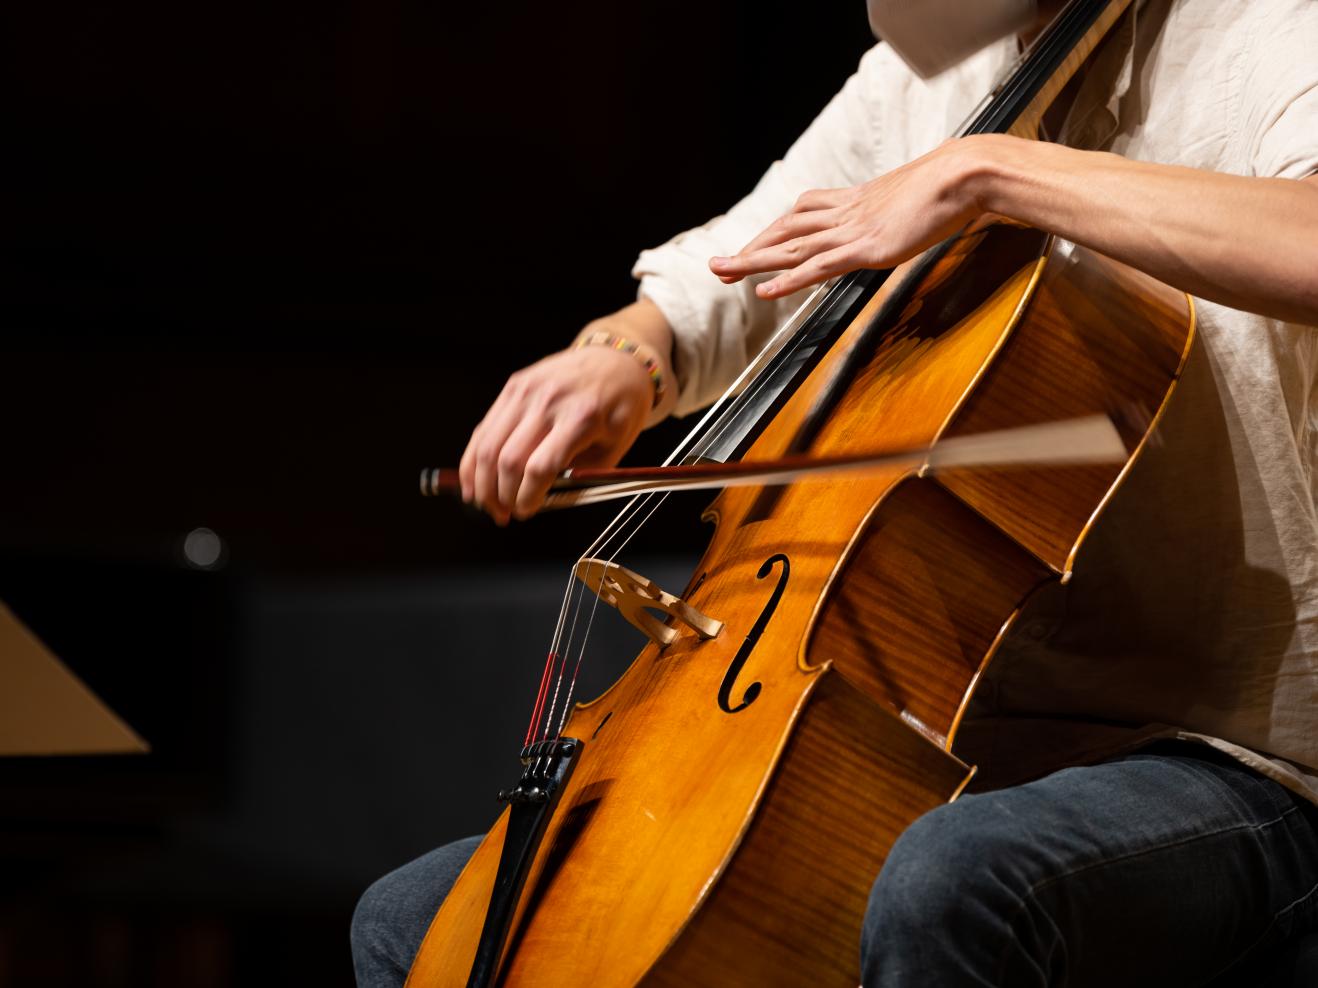 Ein Cellist spielt sein Instrument, die schnelle Bewegung des Bogens ist im Bild zu sehen